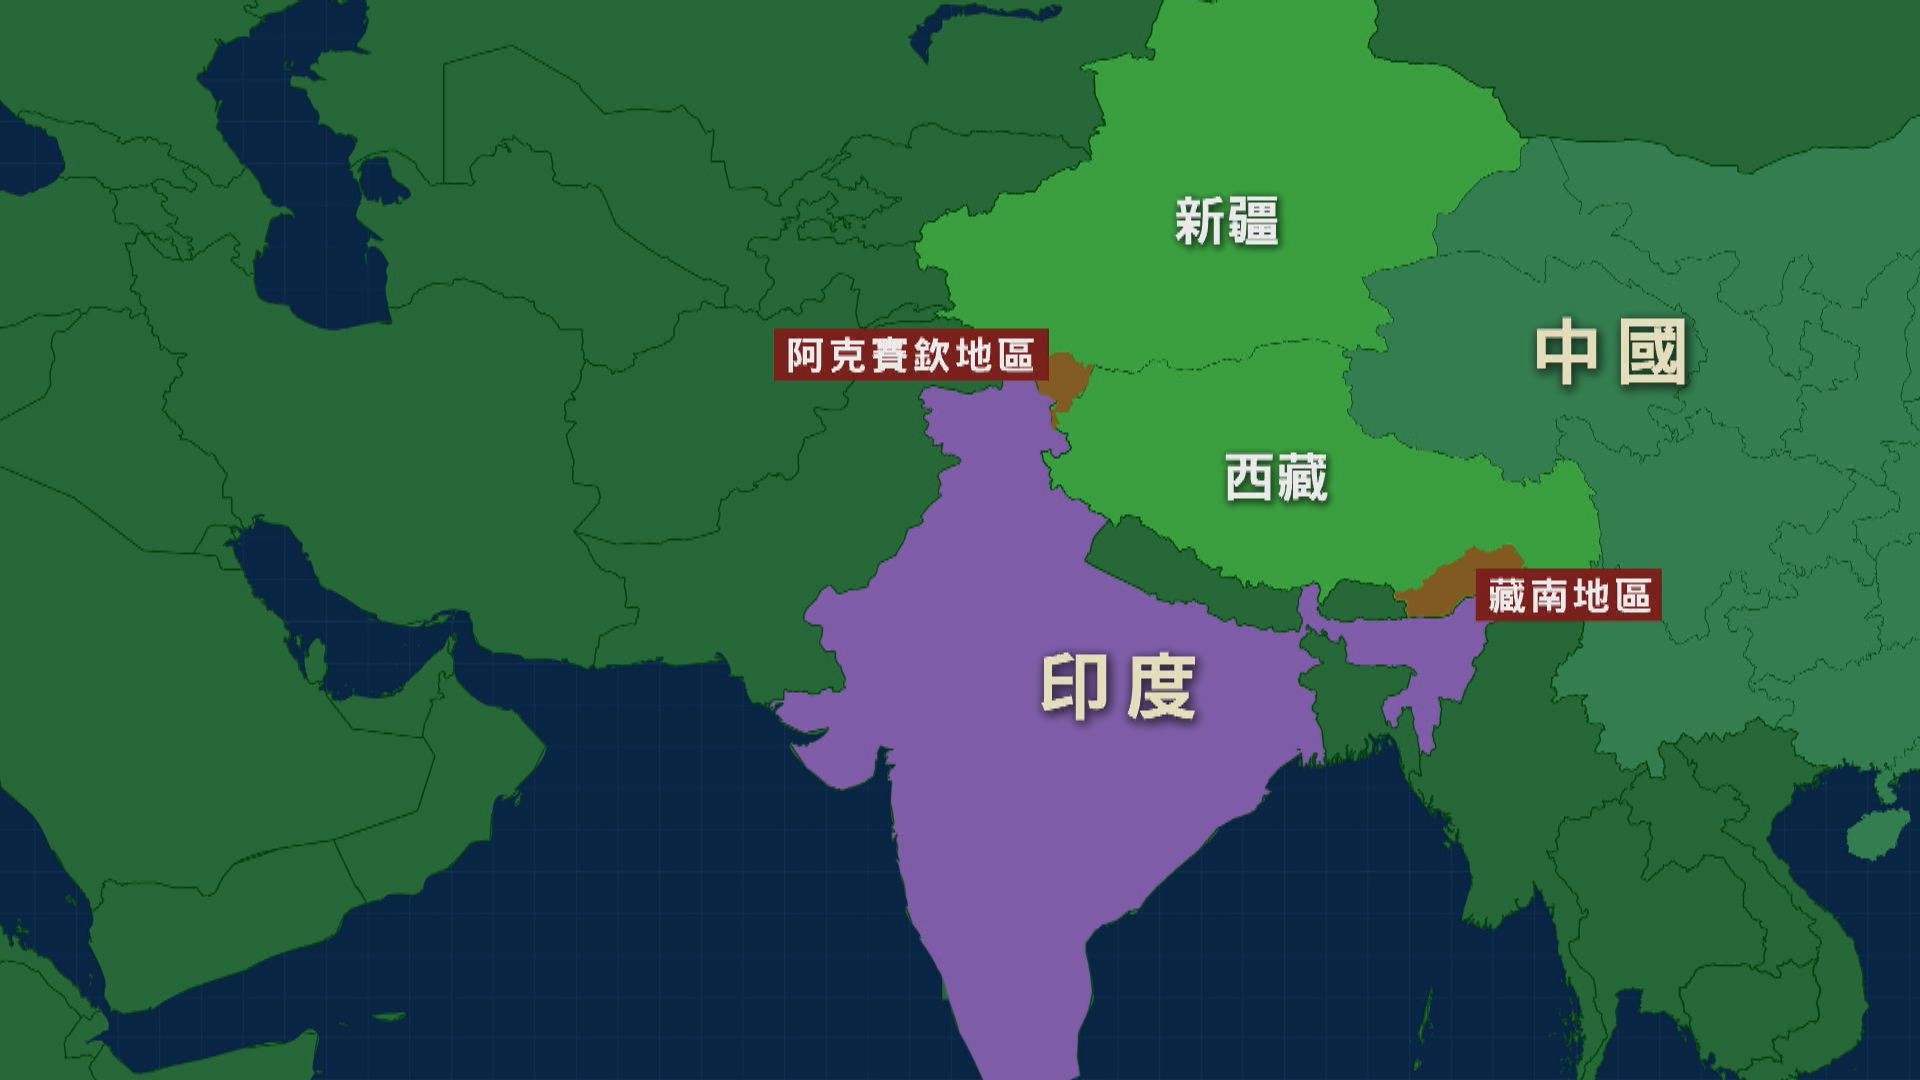 中國新版地圖包含藏南及阿克賽欽地區 外交部指屬行使主權例行做法